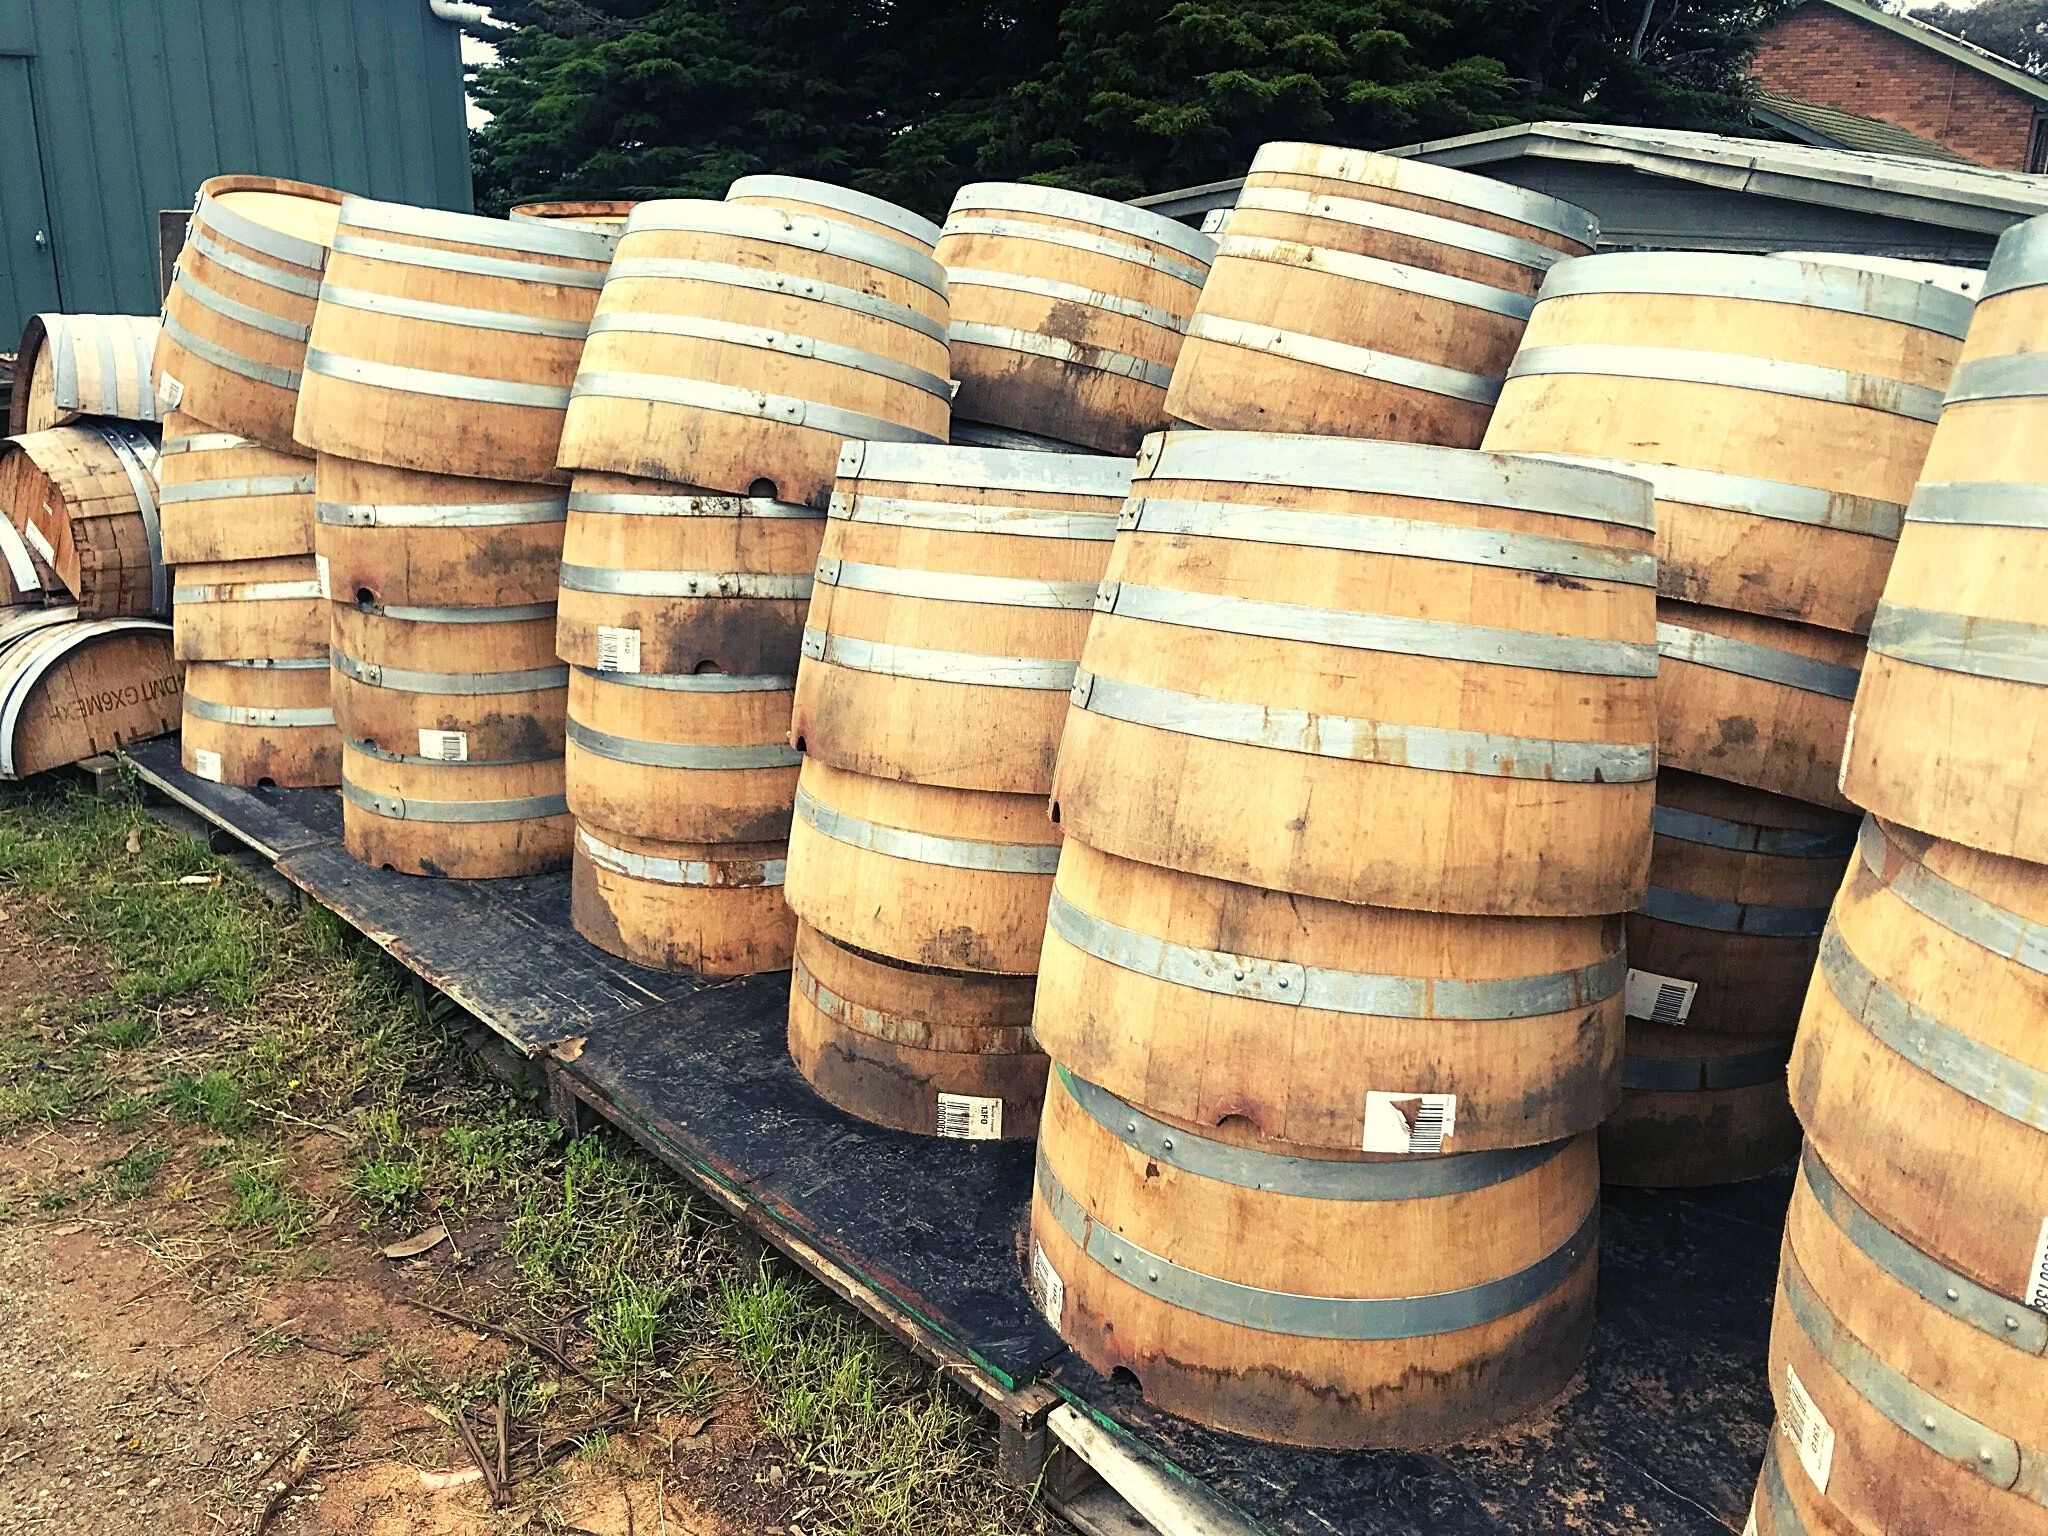 Wine Barrels 300 Half